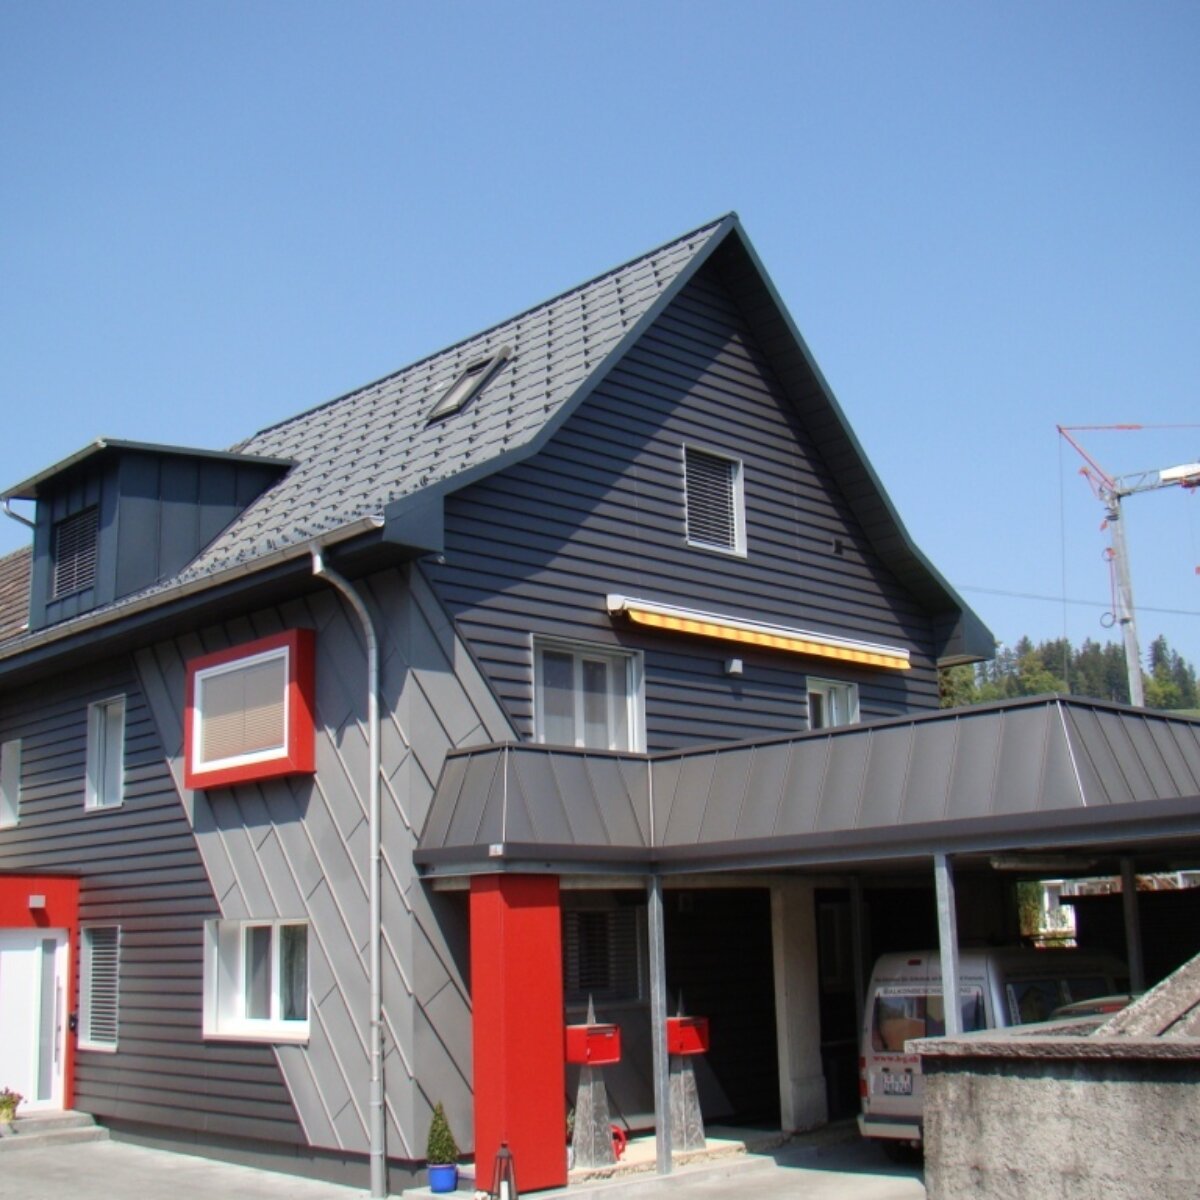 Referenzen energetische sanierung dach und fassade einfamilienhaus foedergelder gebaeudeprogramm